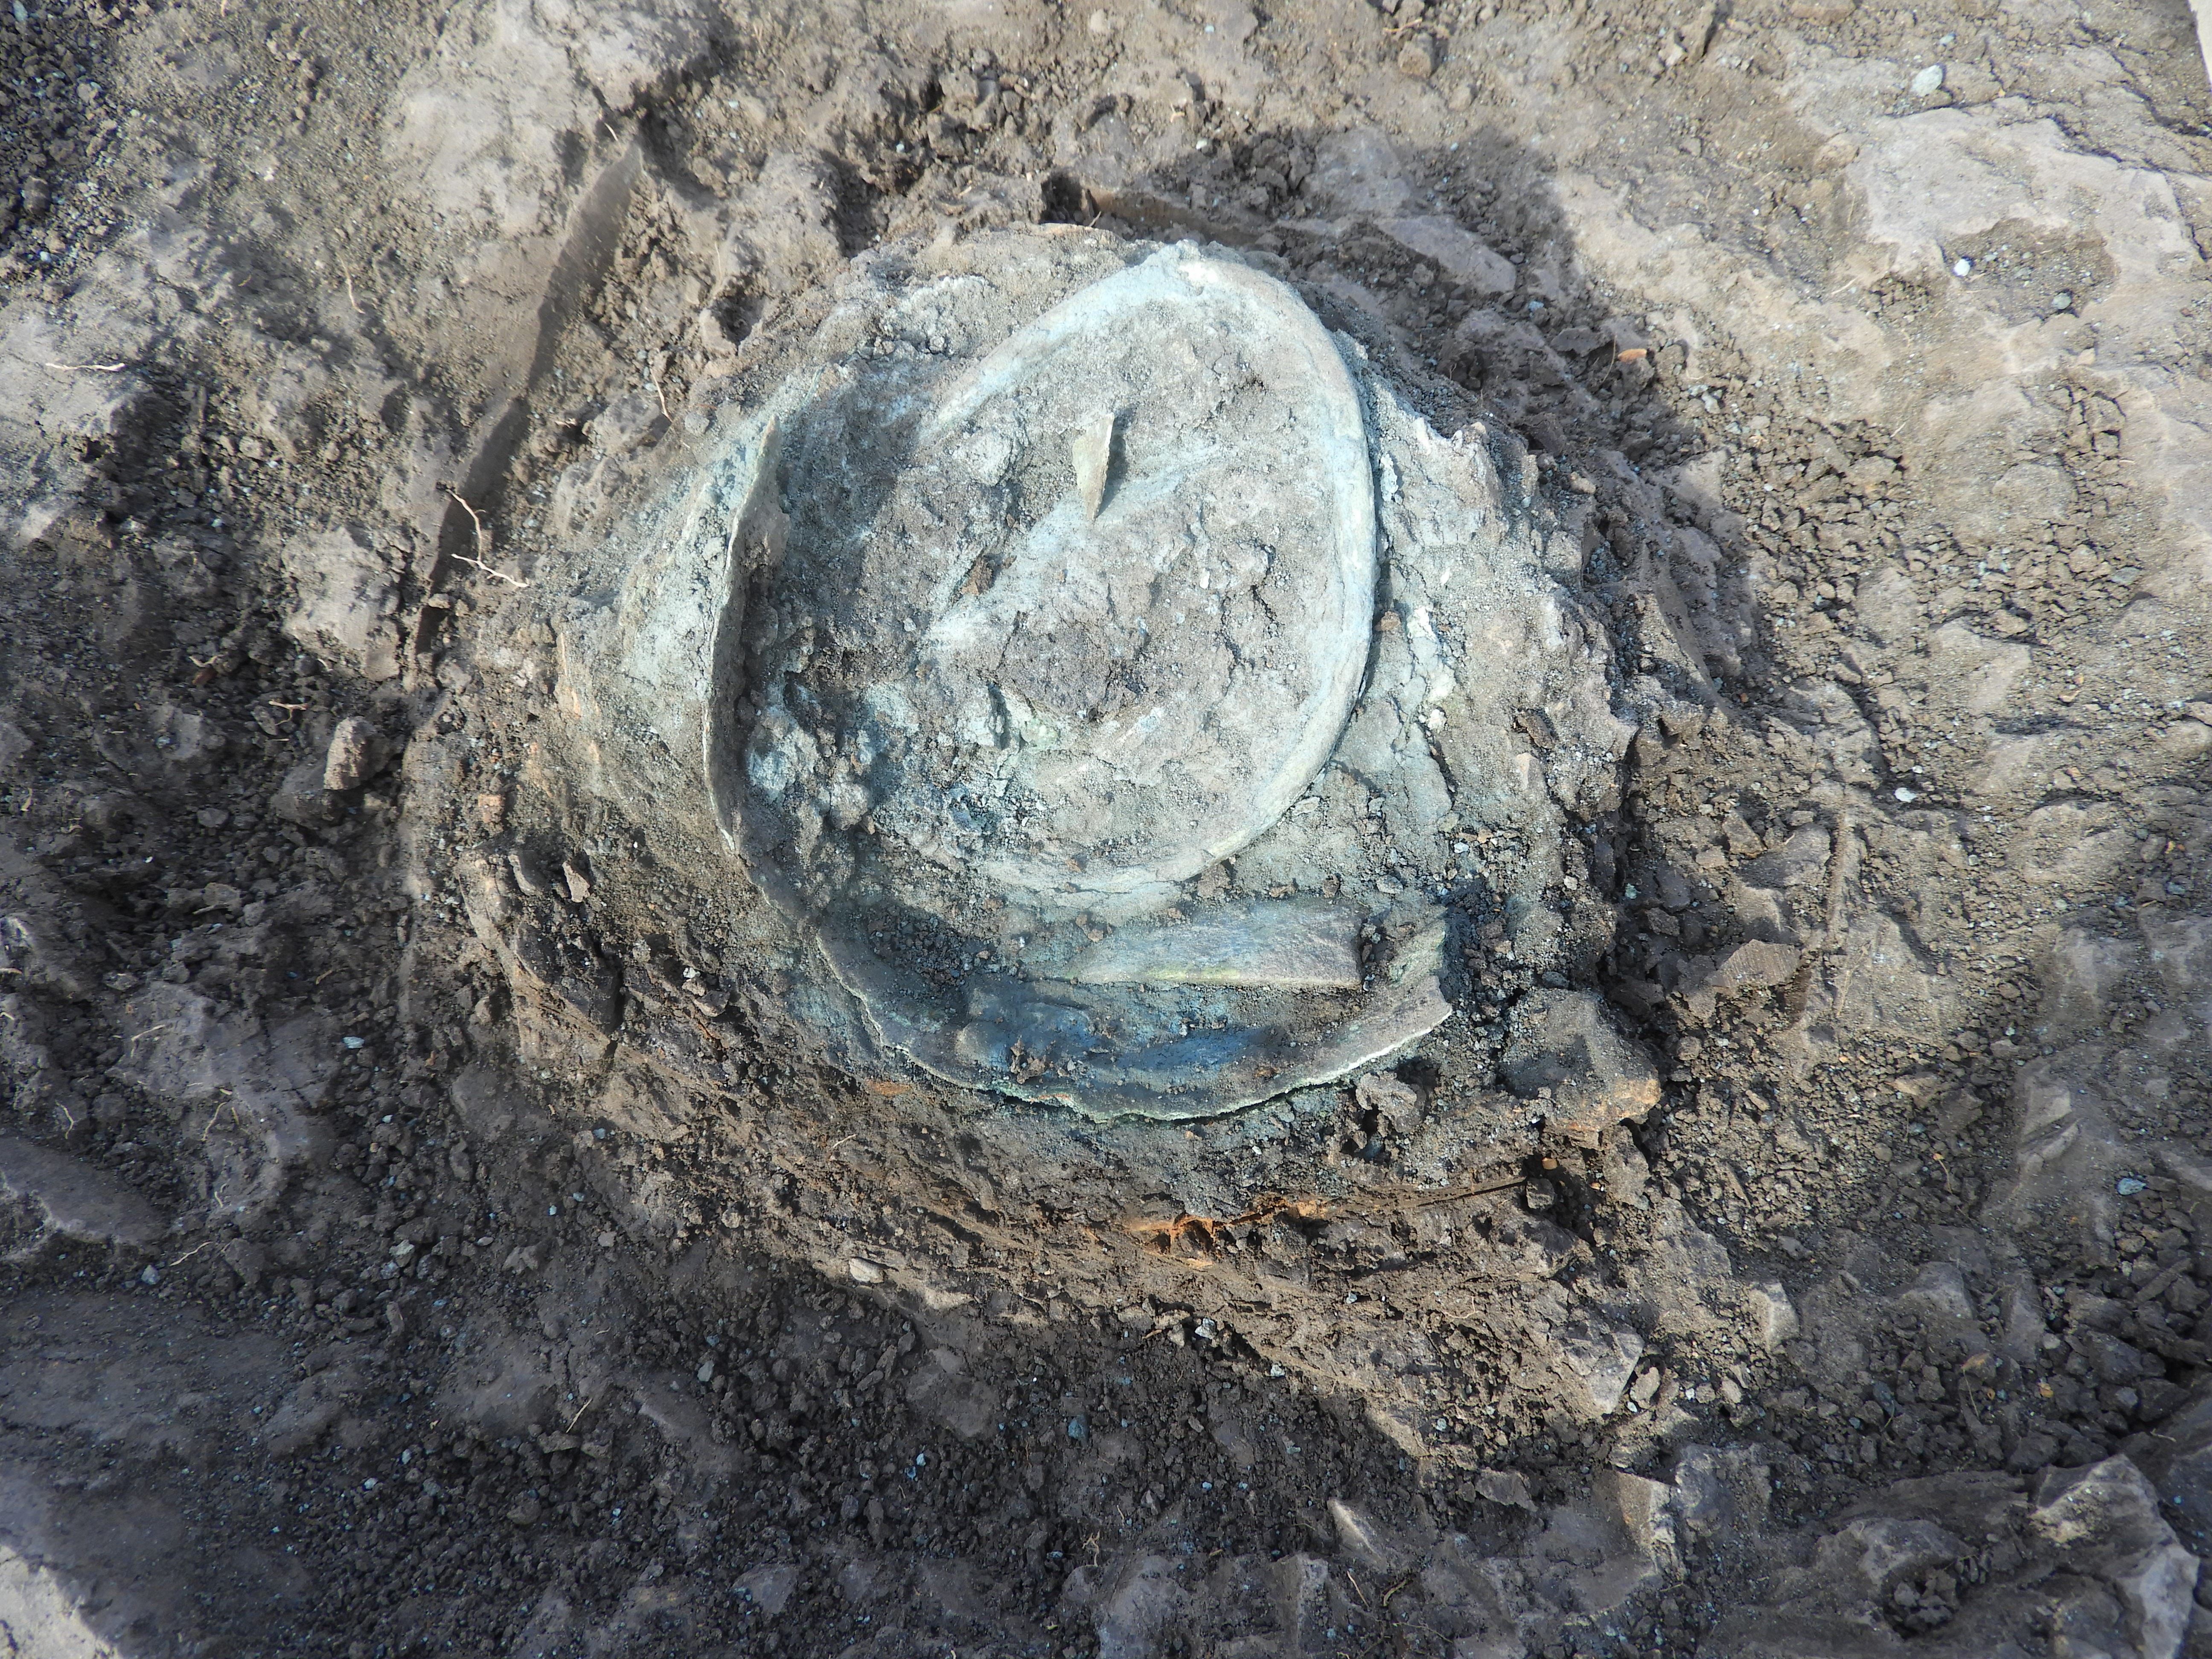 2. kép: Az első kincs alján lévő bronz edény